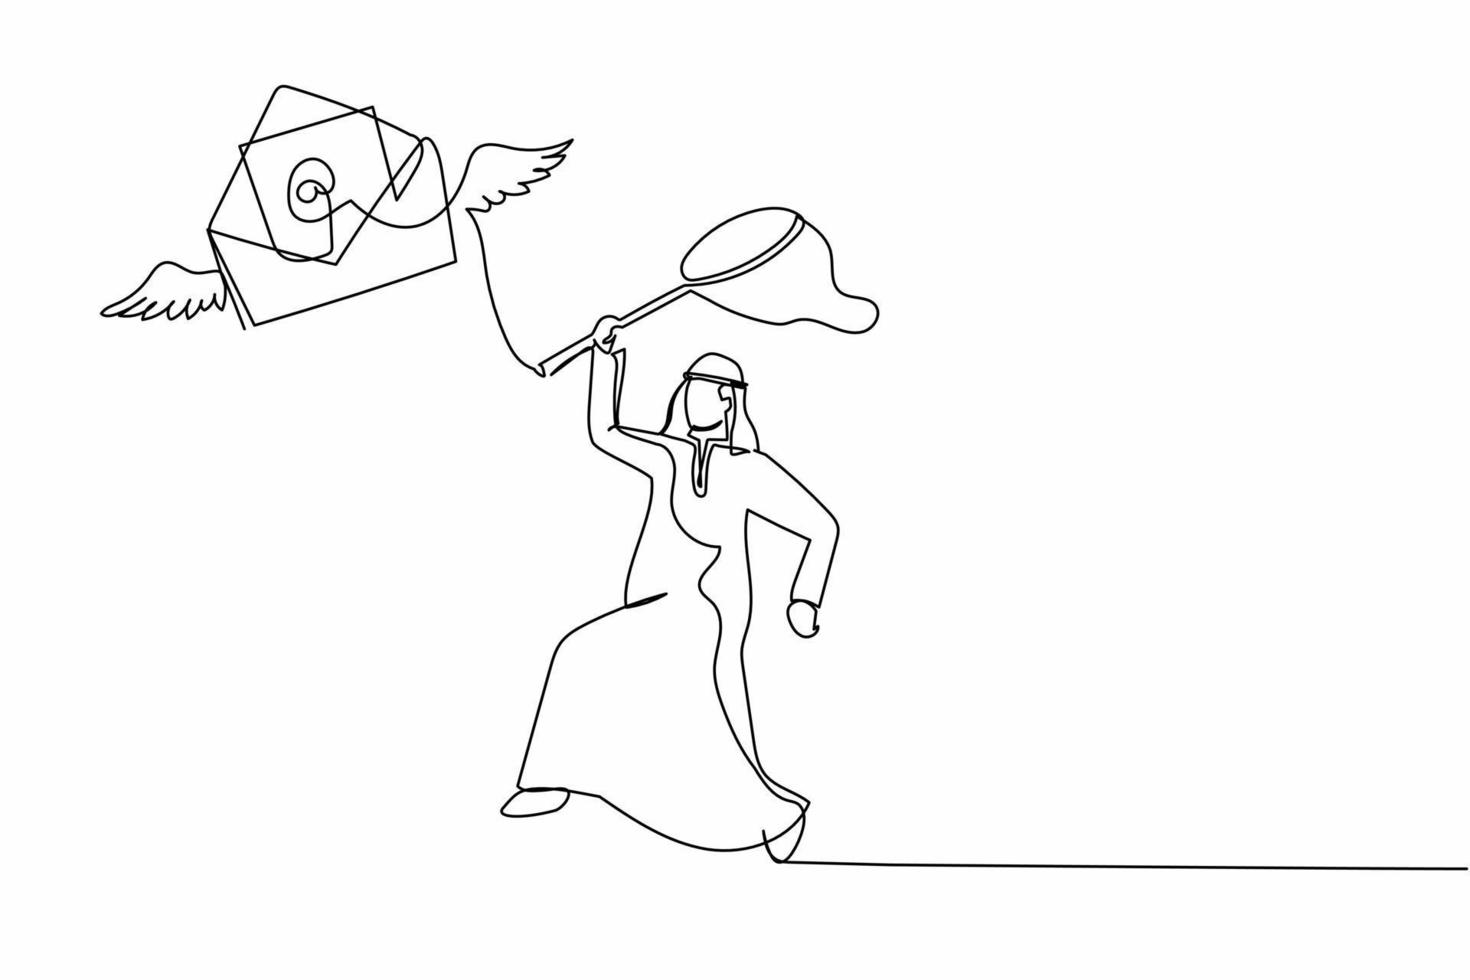 Un hombre de negocios árabe de dibujo continuo intenta atrapar el correo volador con una red de mariposas. Falta papel o carta importante. metáfora empresarial. ilustración gráfica de vector de diseño de dibujo de una sola línea